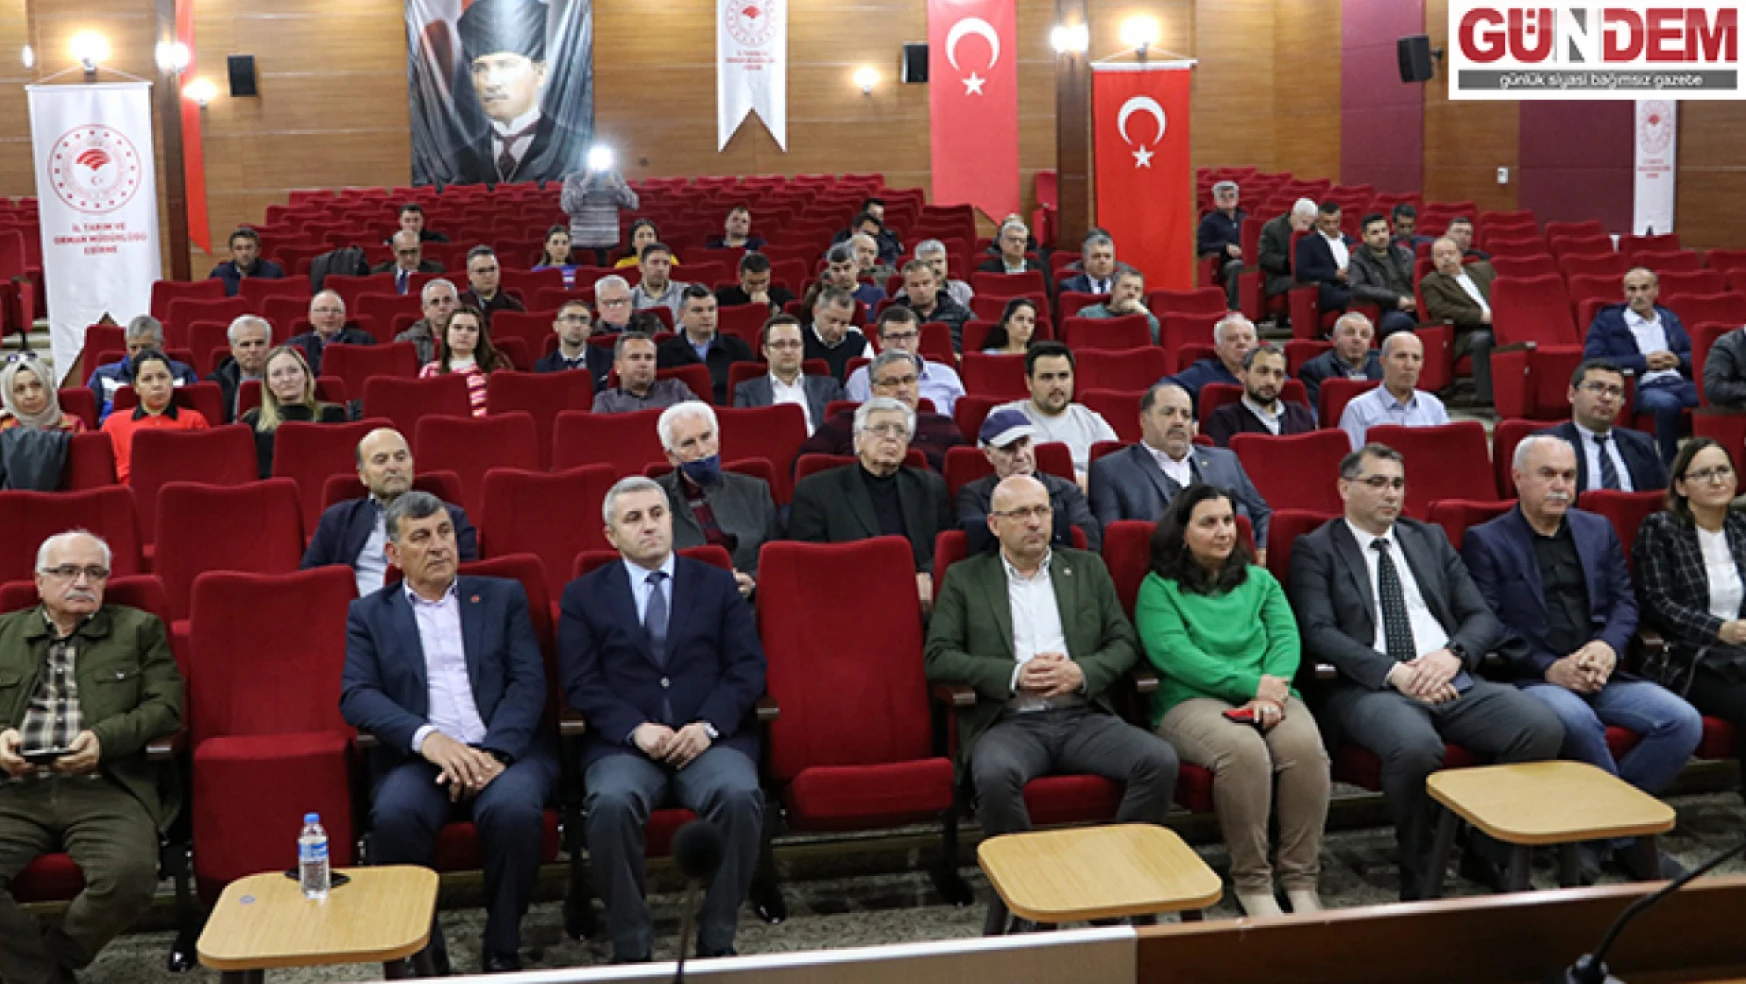 Edirne'de TARSİM bilgilendirme toplantısı düzenlendi